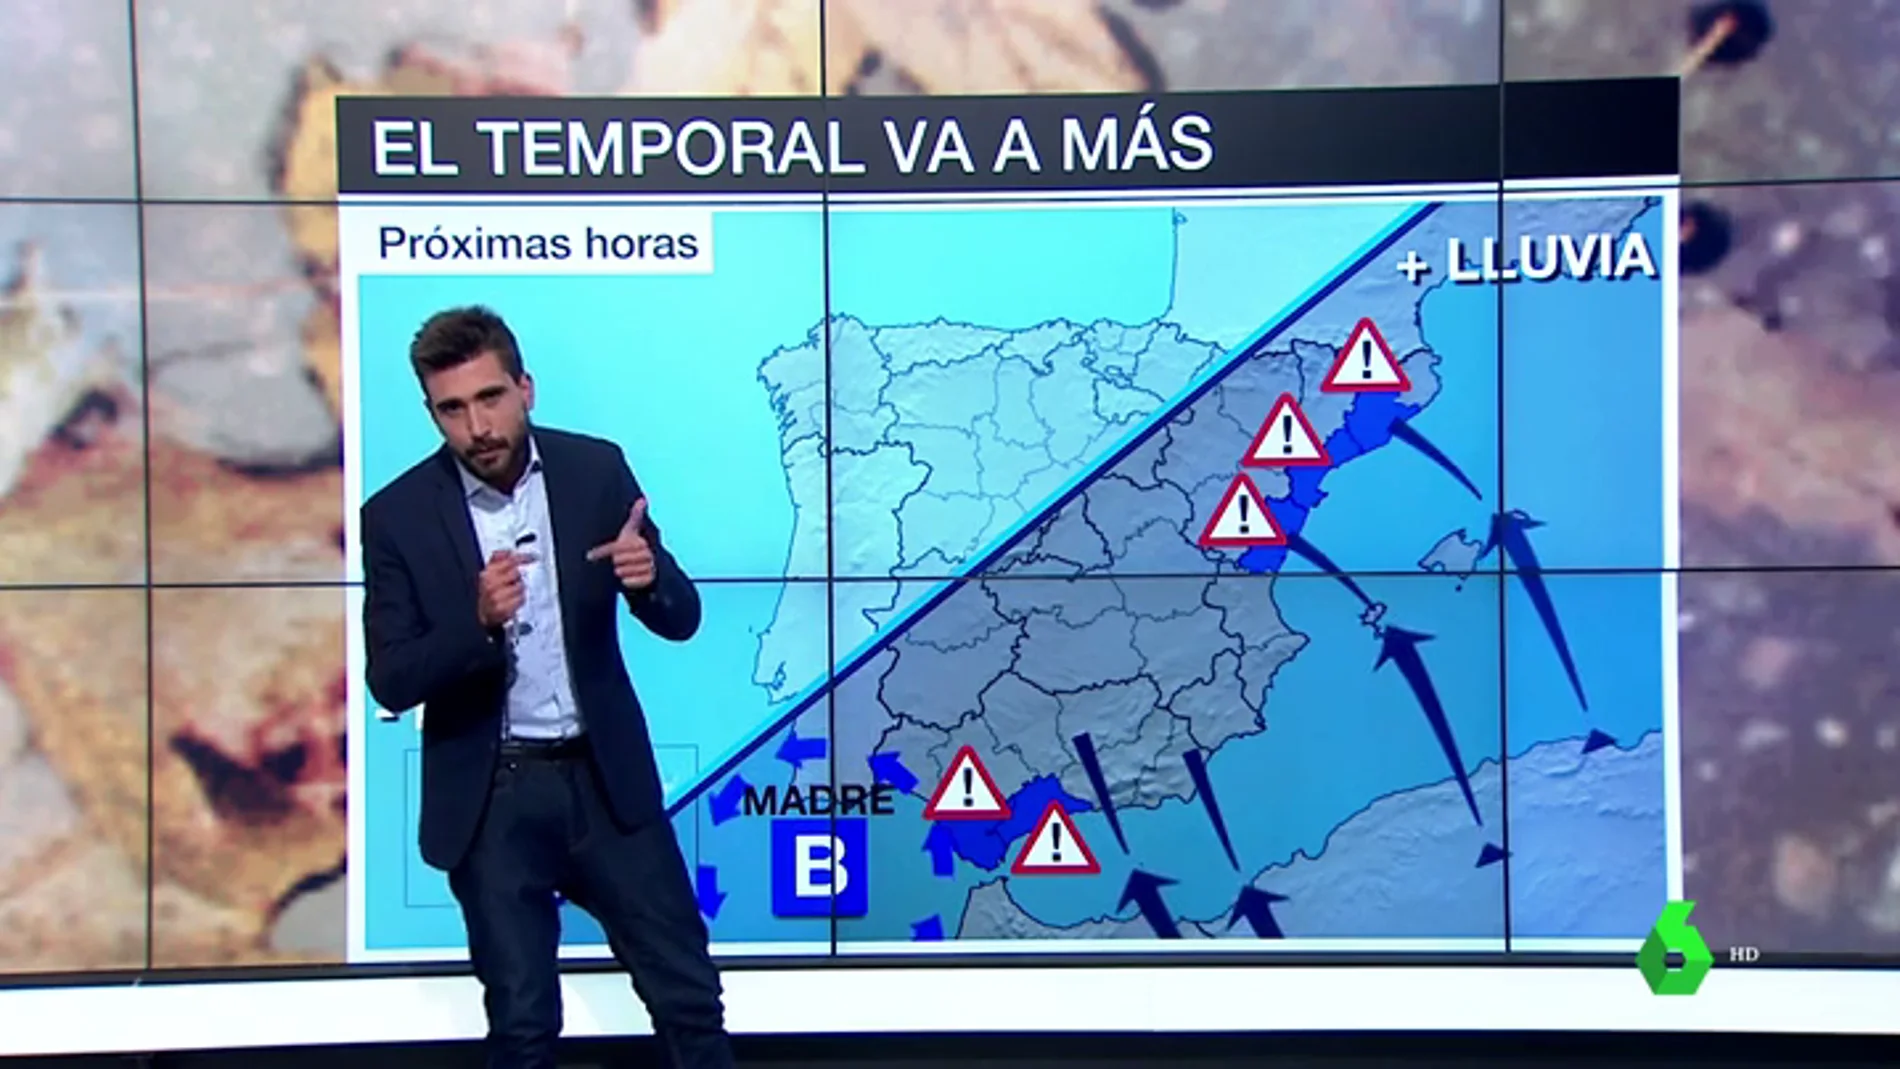  El temporal va a más y deja una situación preocupante en la Comunidad Valenciana donde llueve sobre mojado